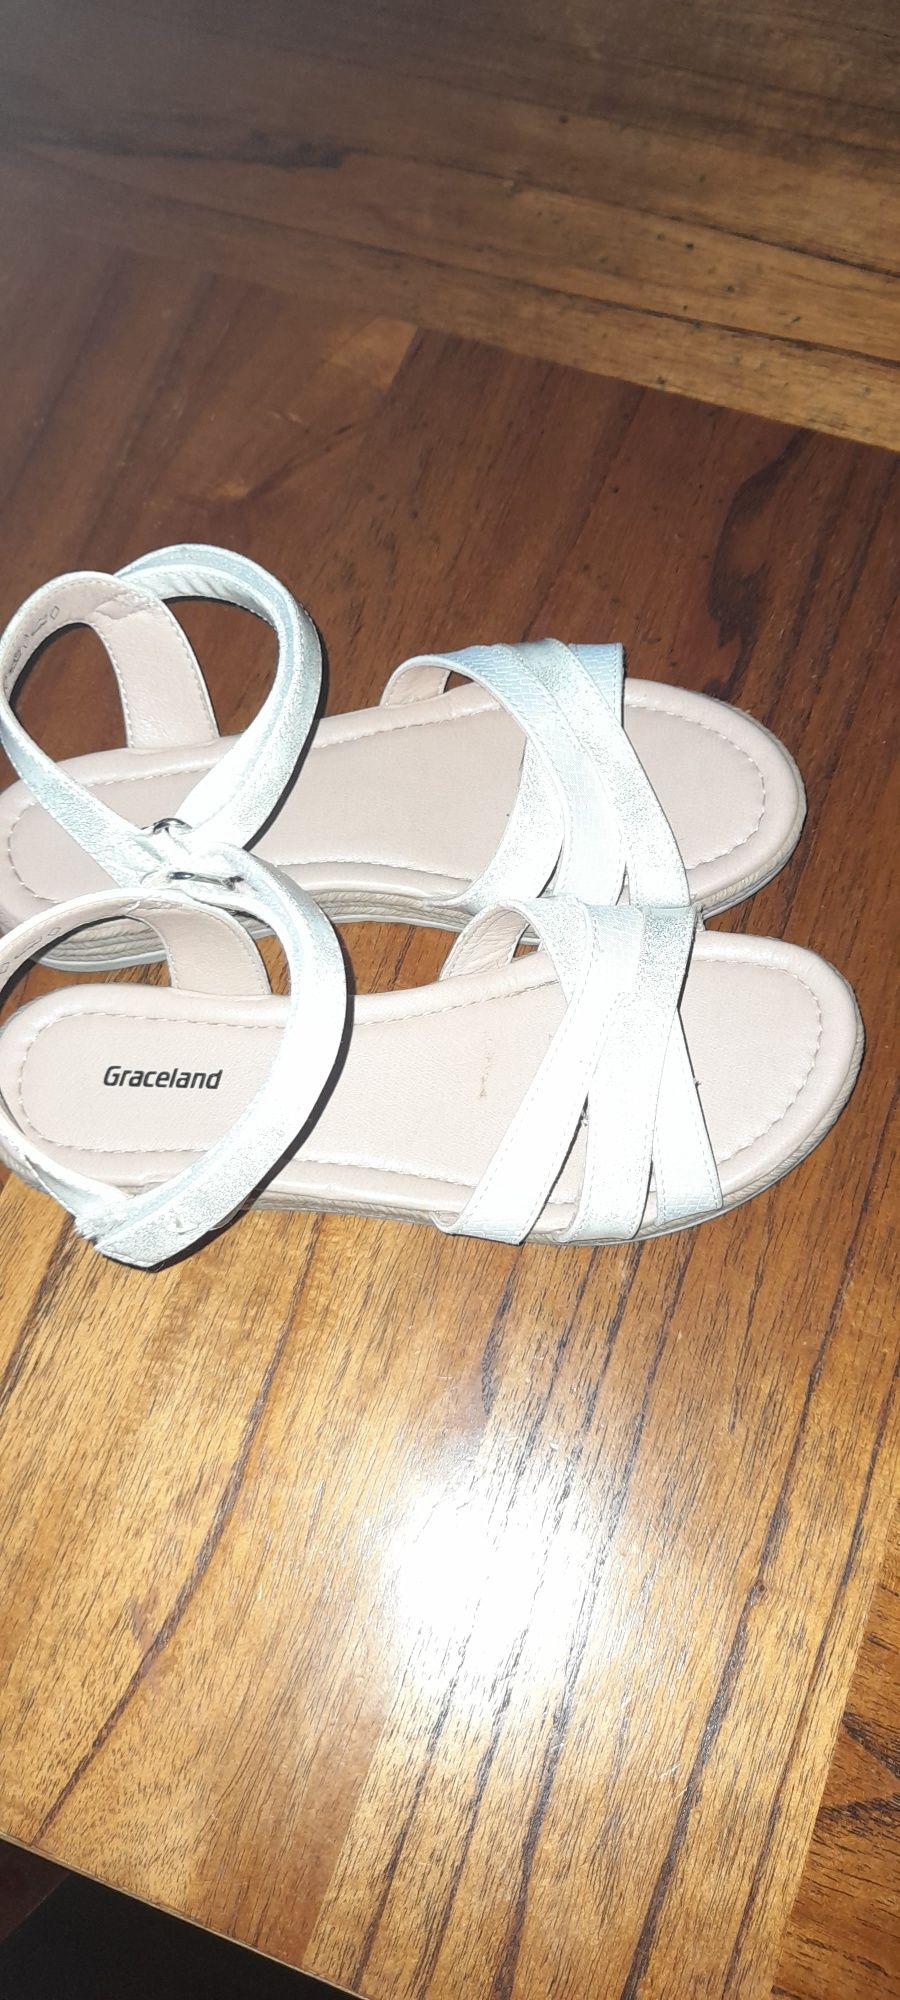 Sandálias de rapariga tamanho 34 brancas